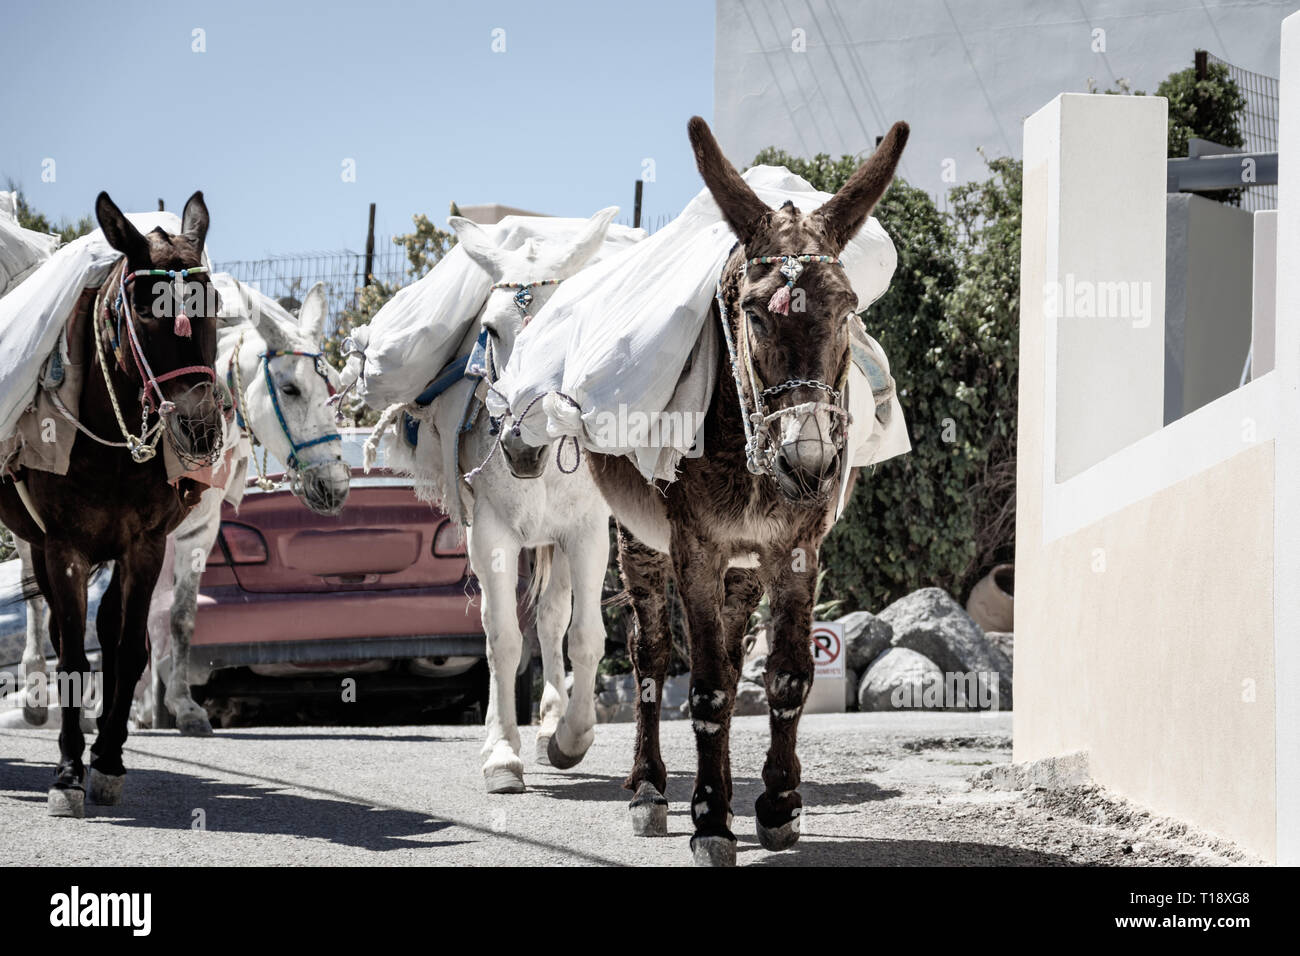 Les ânes transportent gracieusement des sacs à travers les rues sinueuses de la vieille ville sur l'île pittoresque de Santorin. Banque D'Images